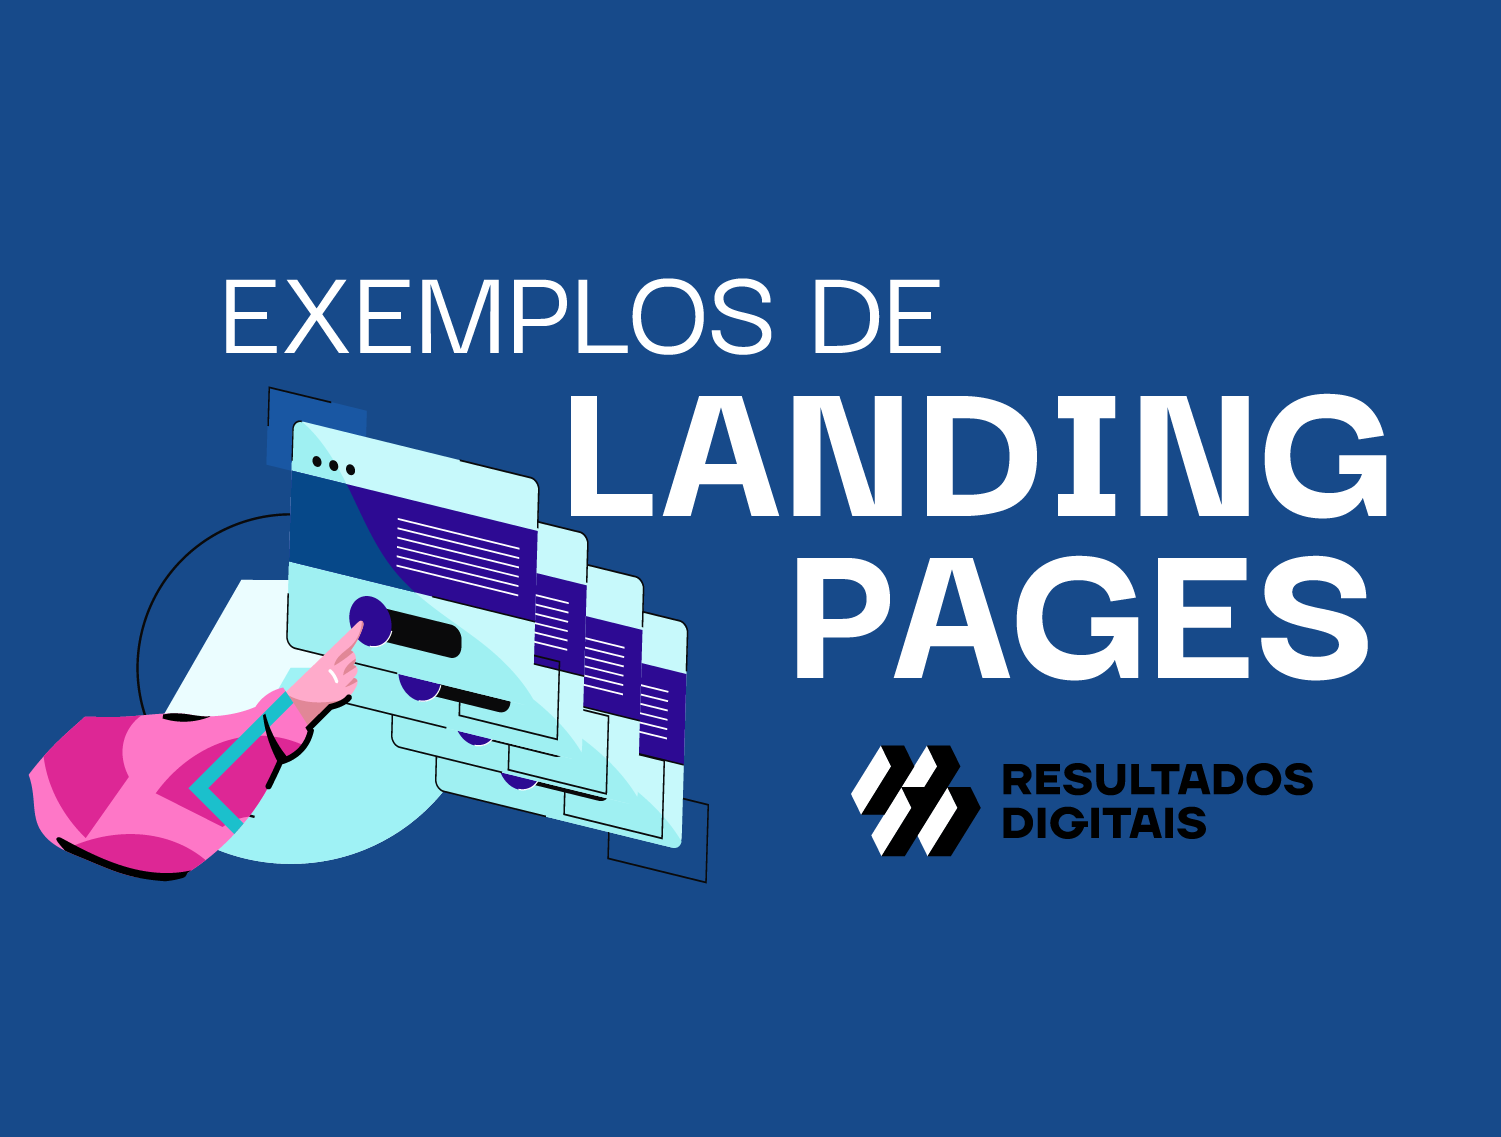 Exemplos de Landing Pages: 34 ideias para qualquer negócio